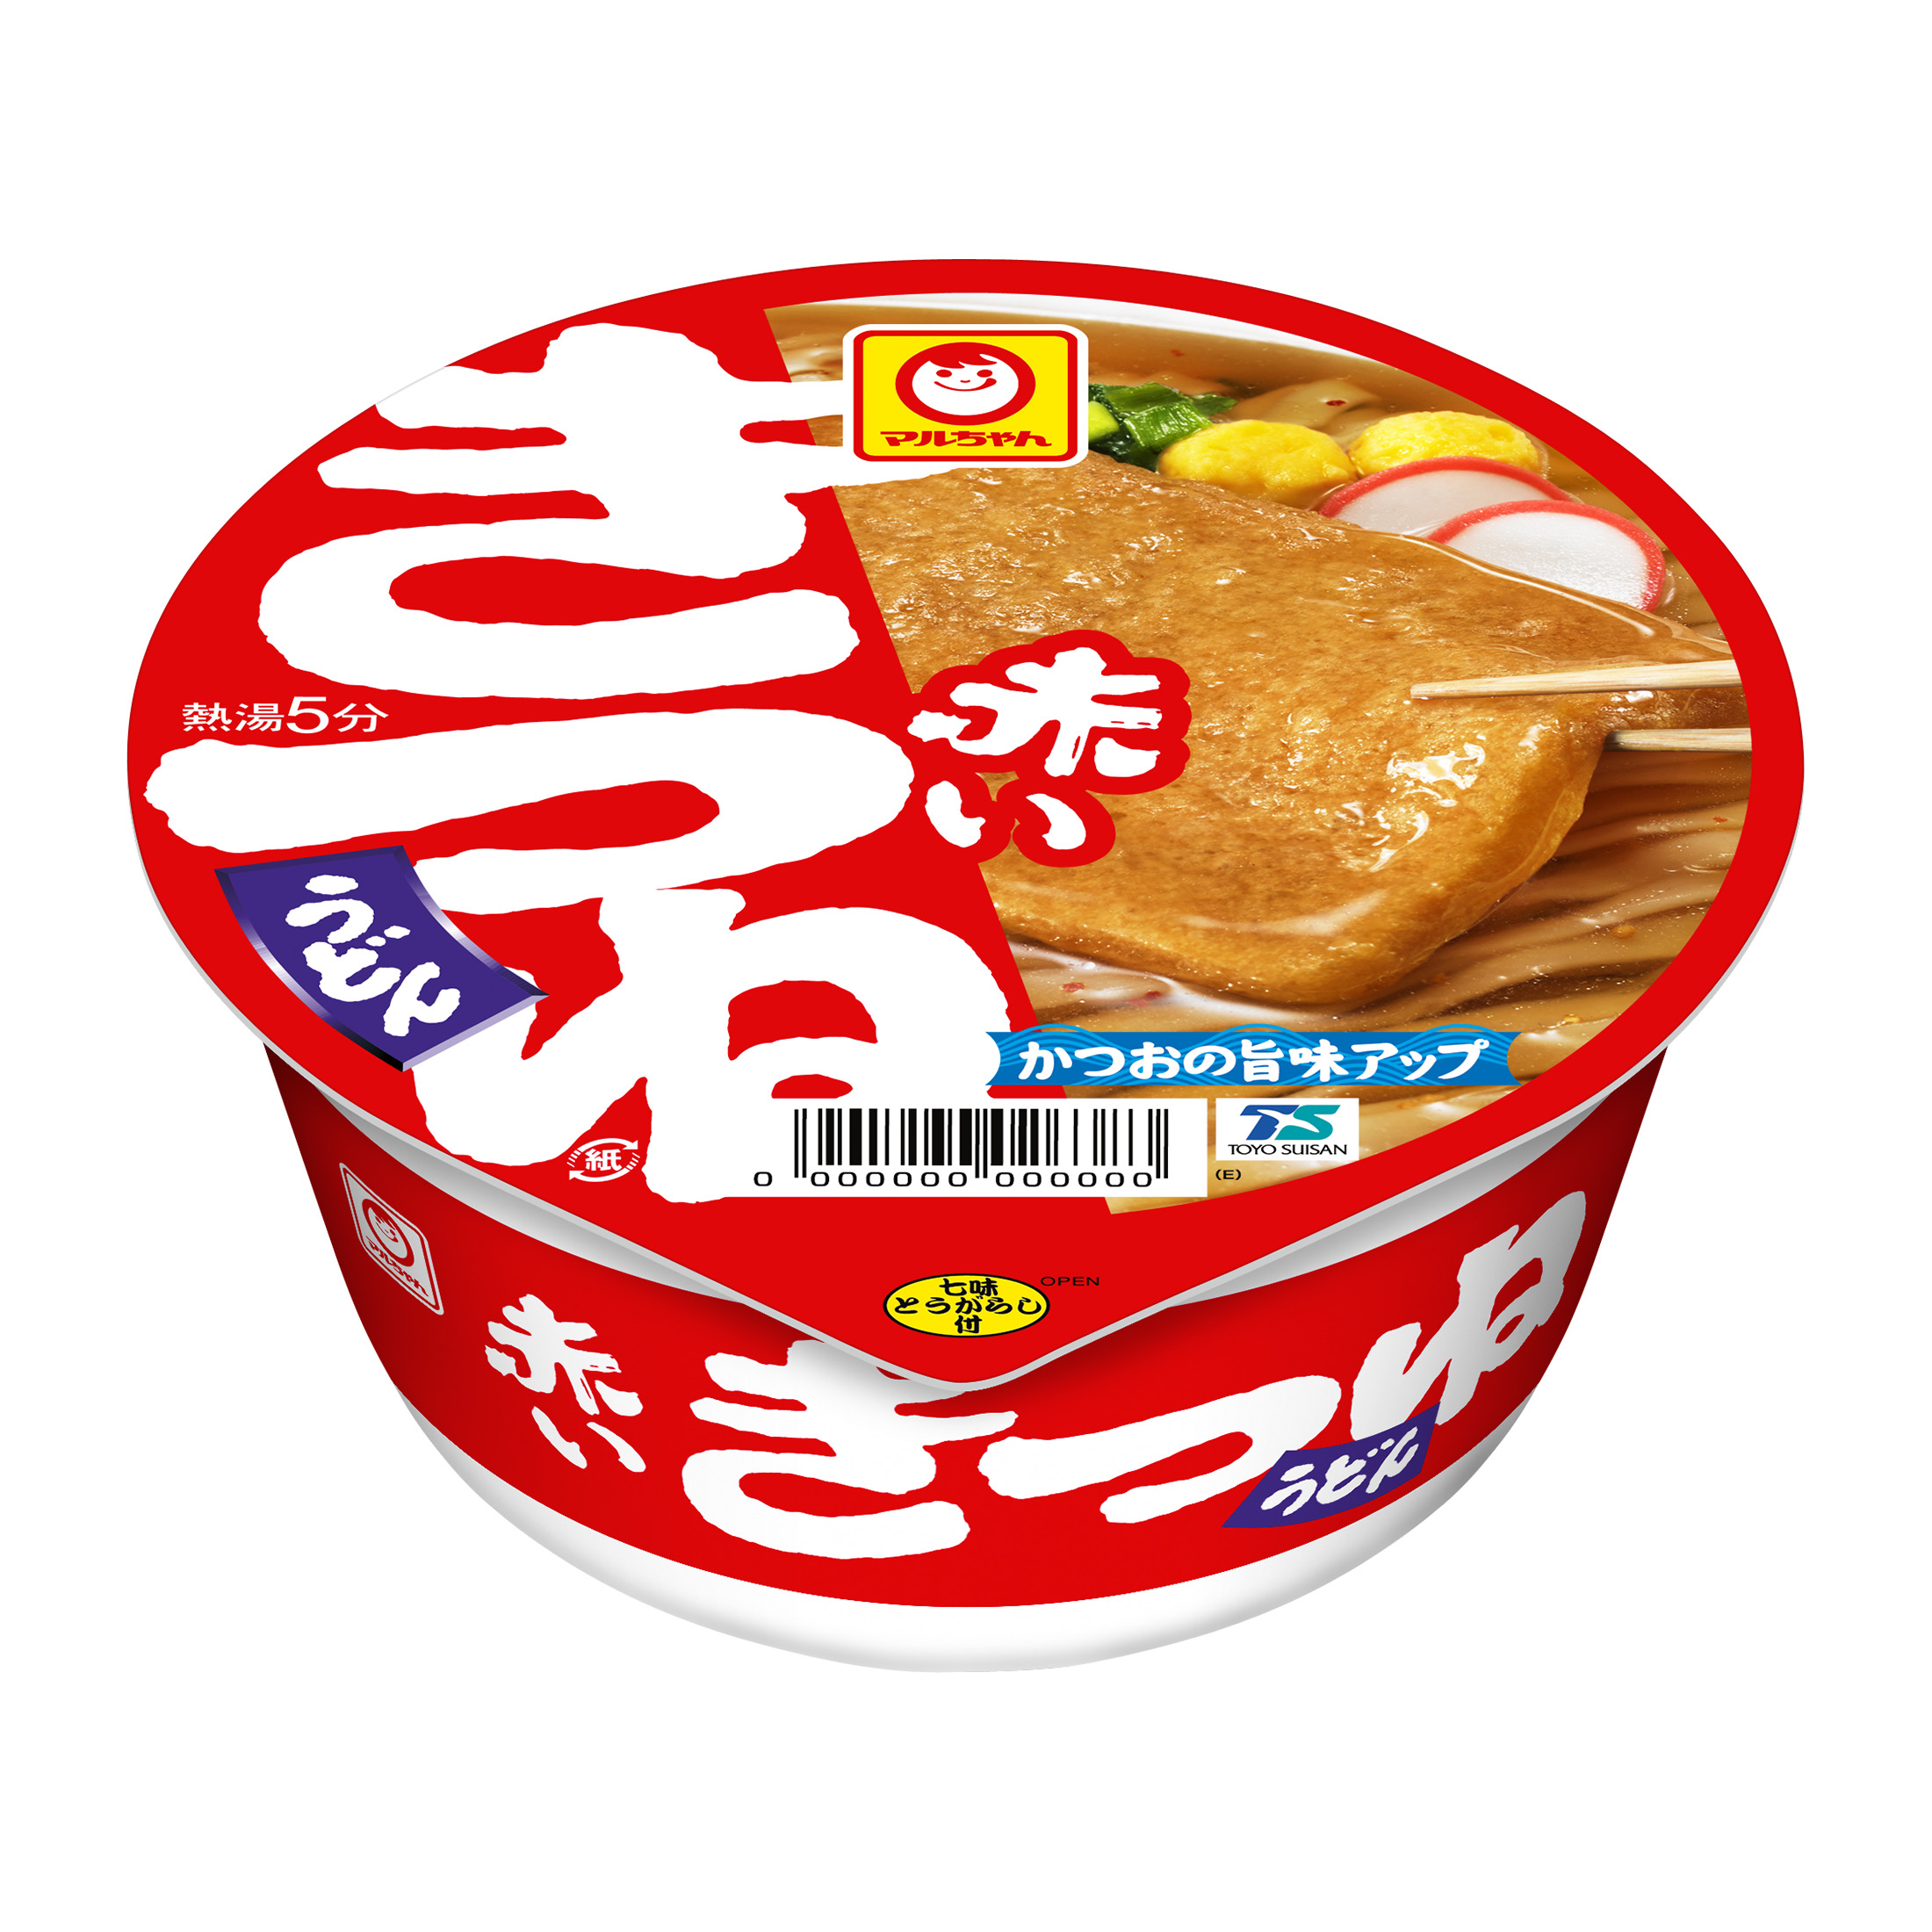 マルちゃん 日清食品 サッポロ一番 ヒガシフーズ カップ麺 ミニサイズ